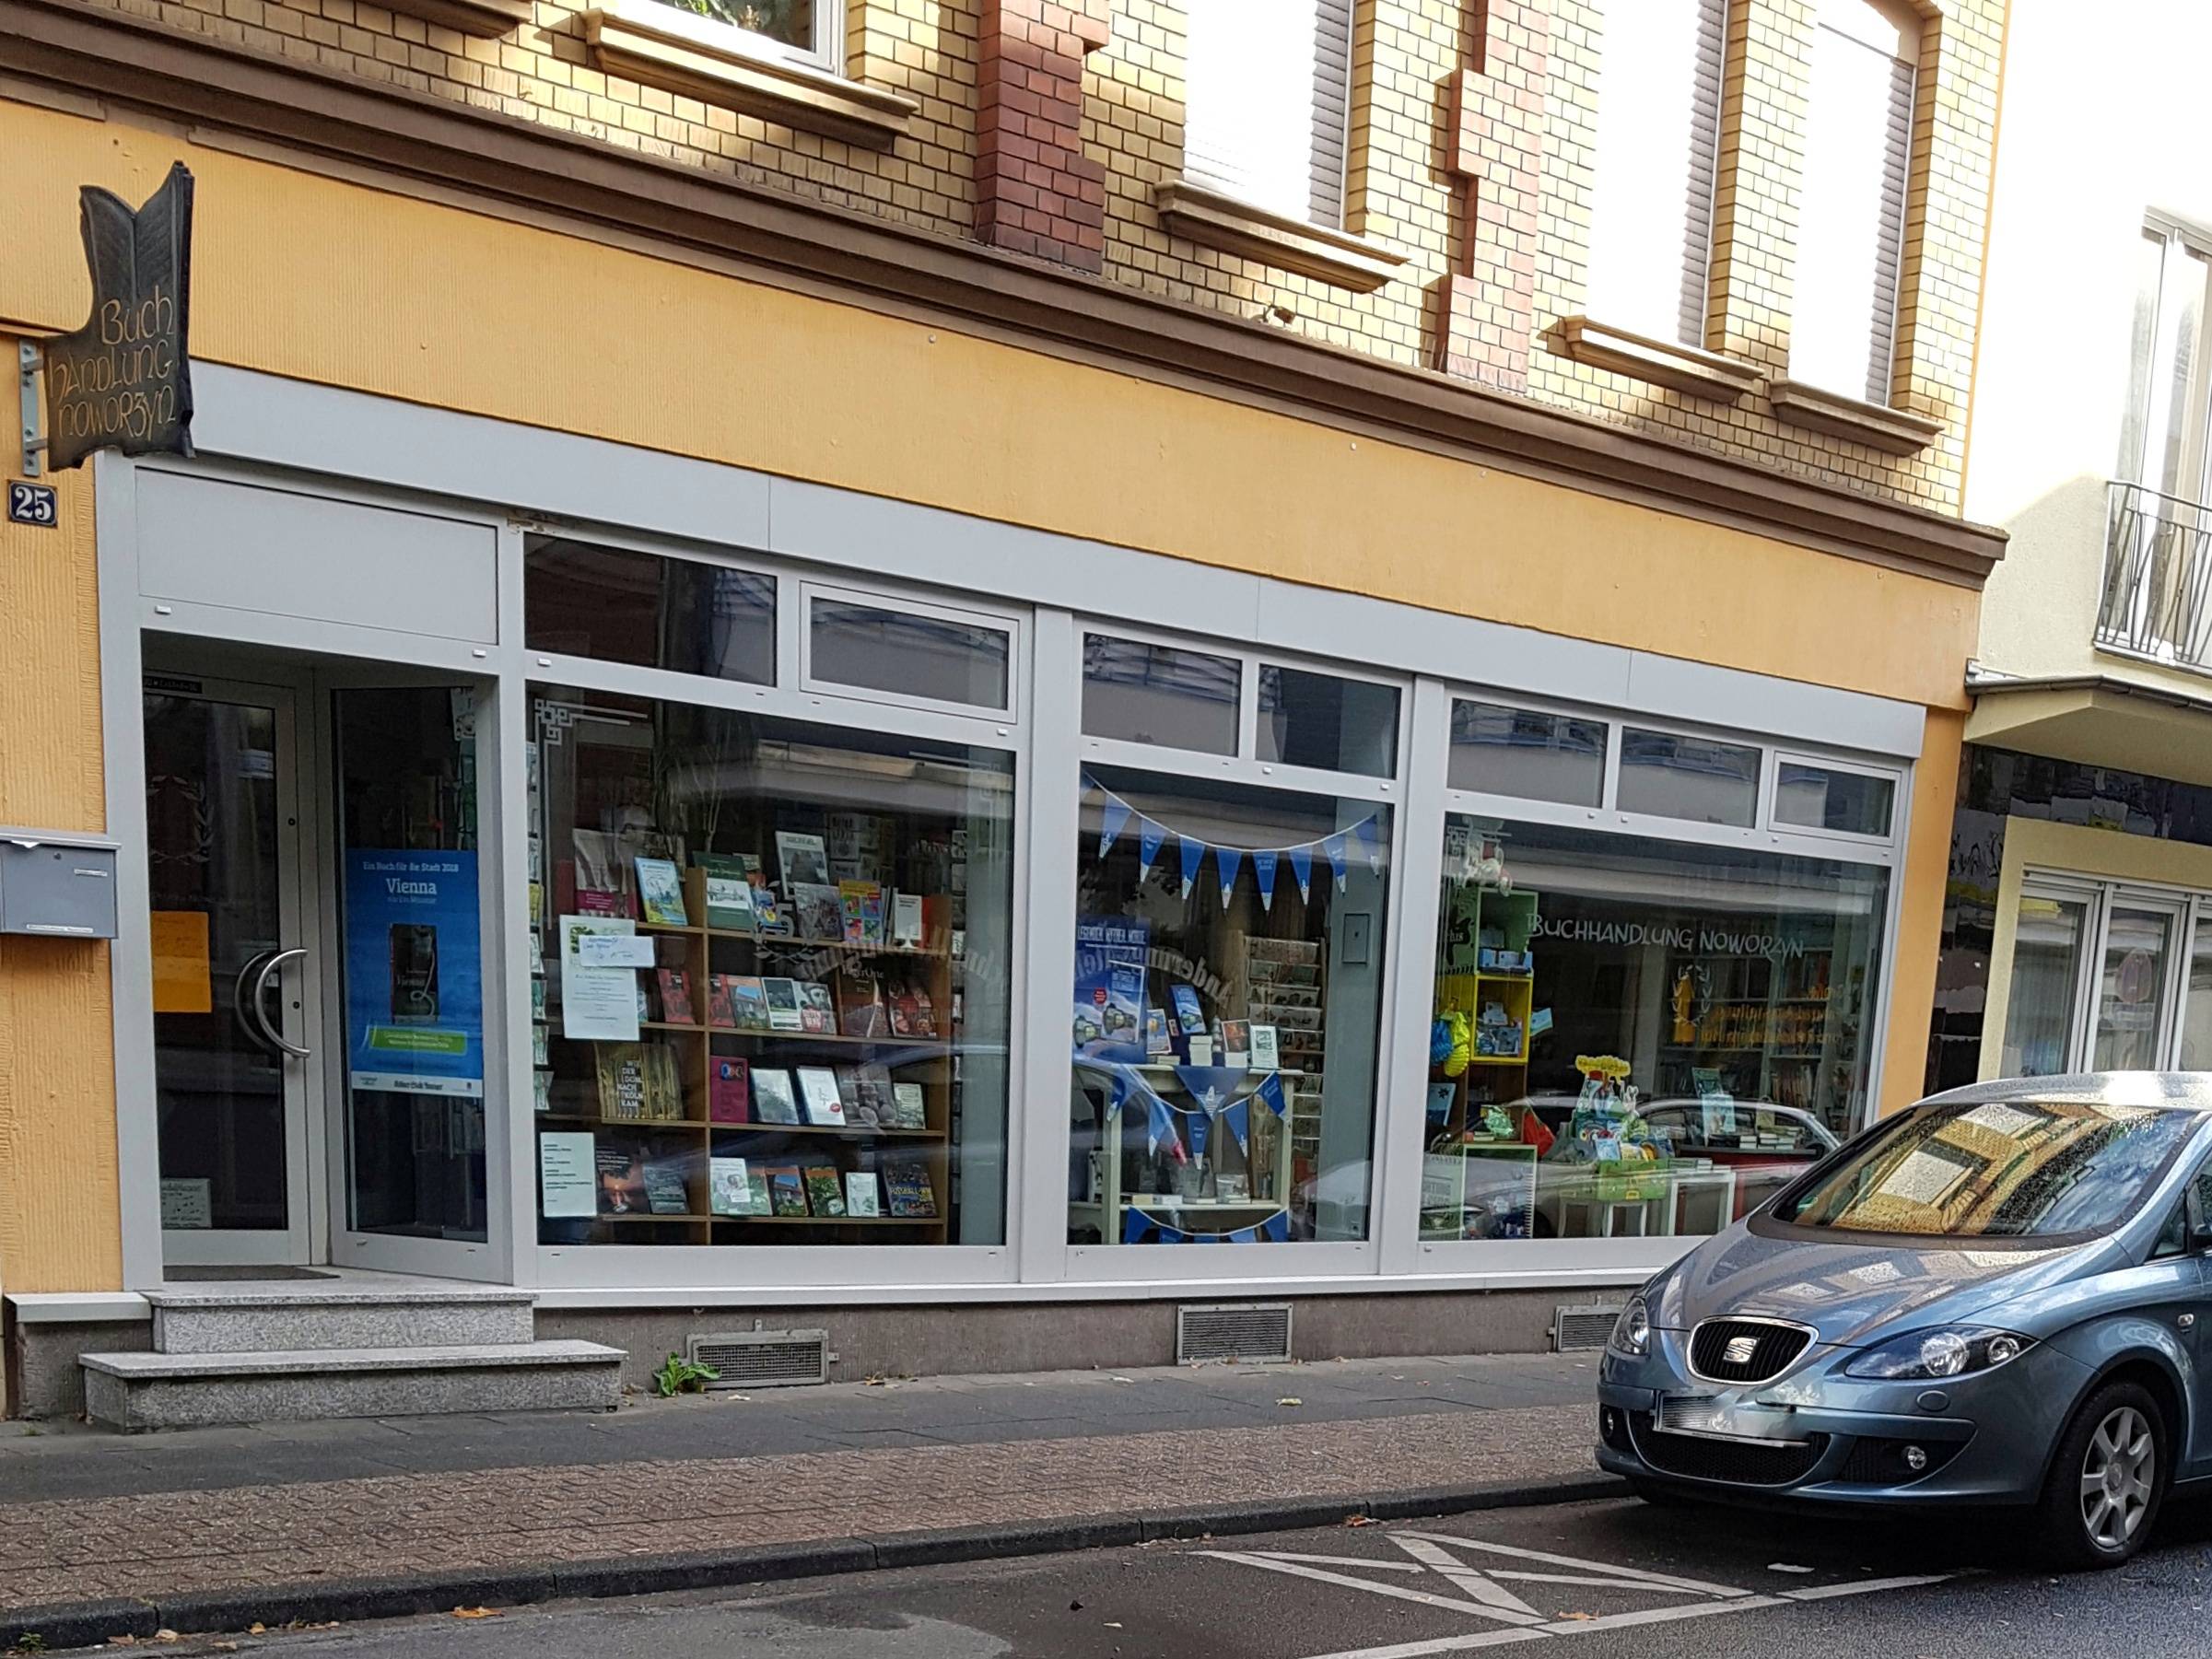 Bild 1 Buchhandlung Noworzyn in Leverkusen